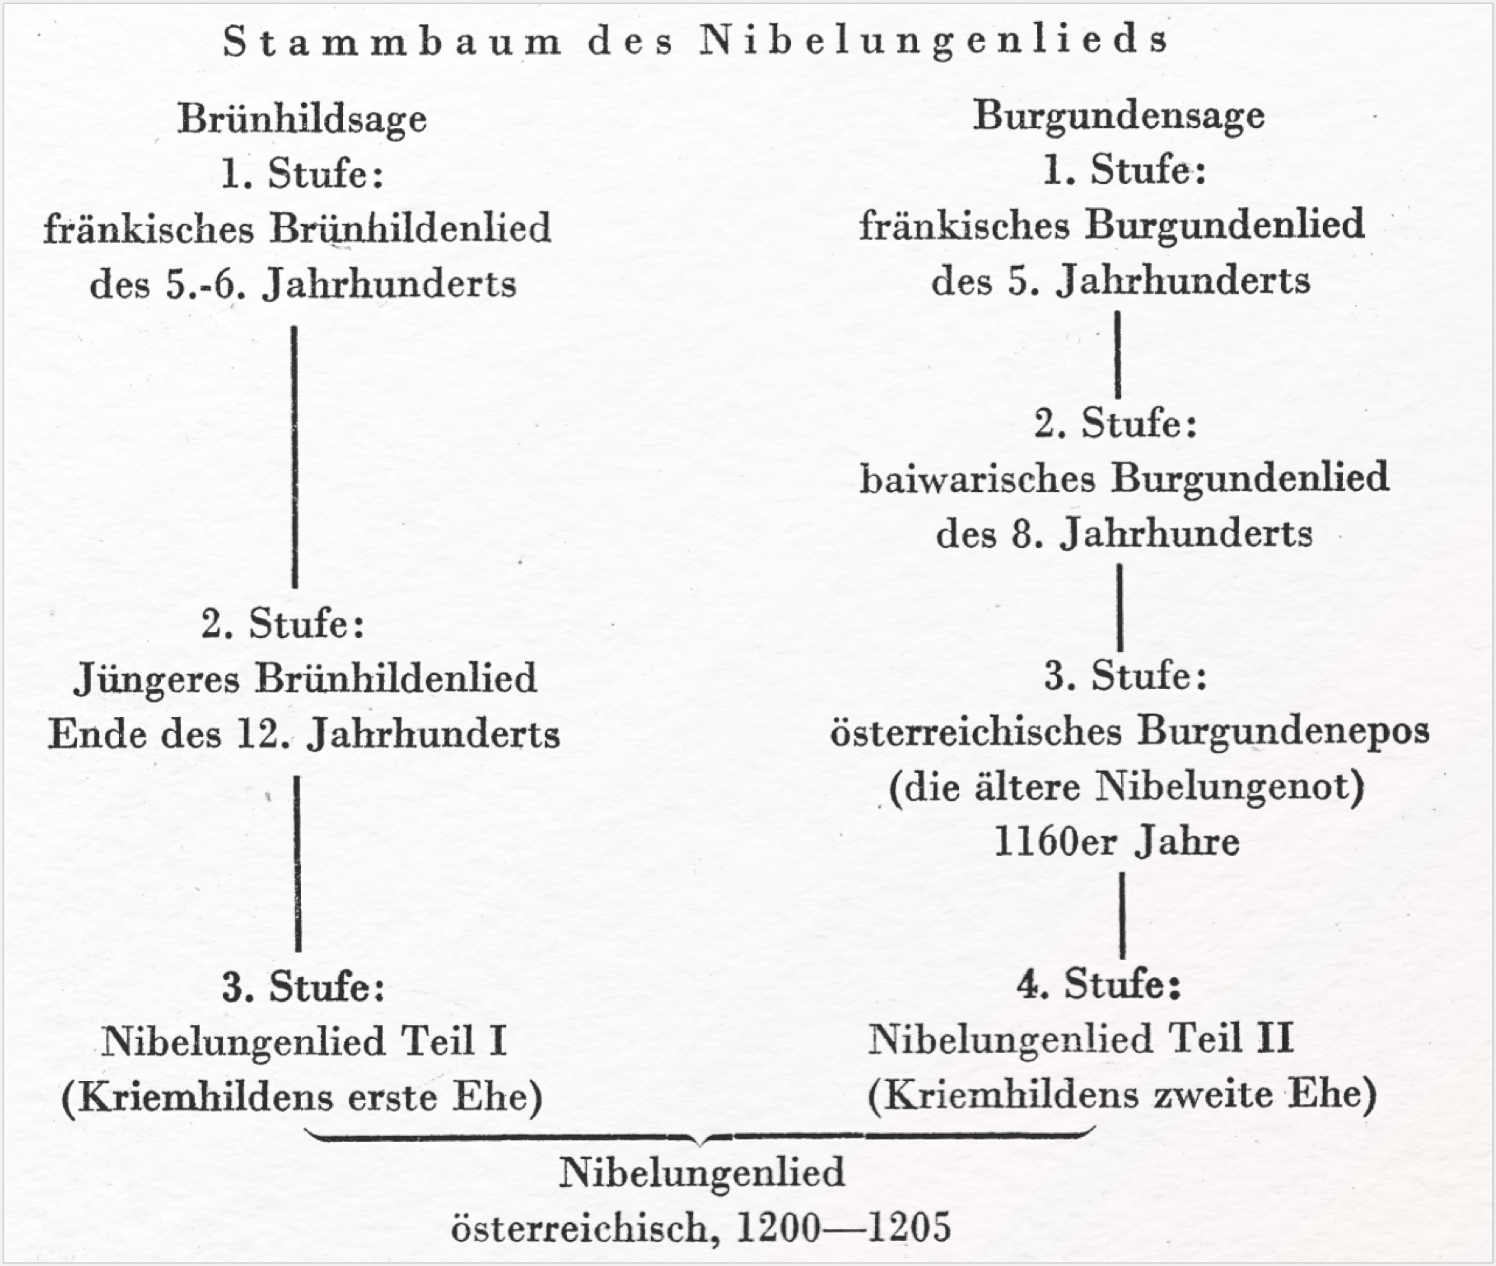 Abb. 4: Stammbaum des Nibelungenlieds bei Heusler 1955, 49